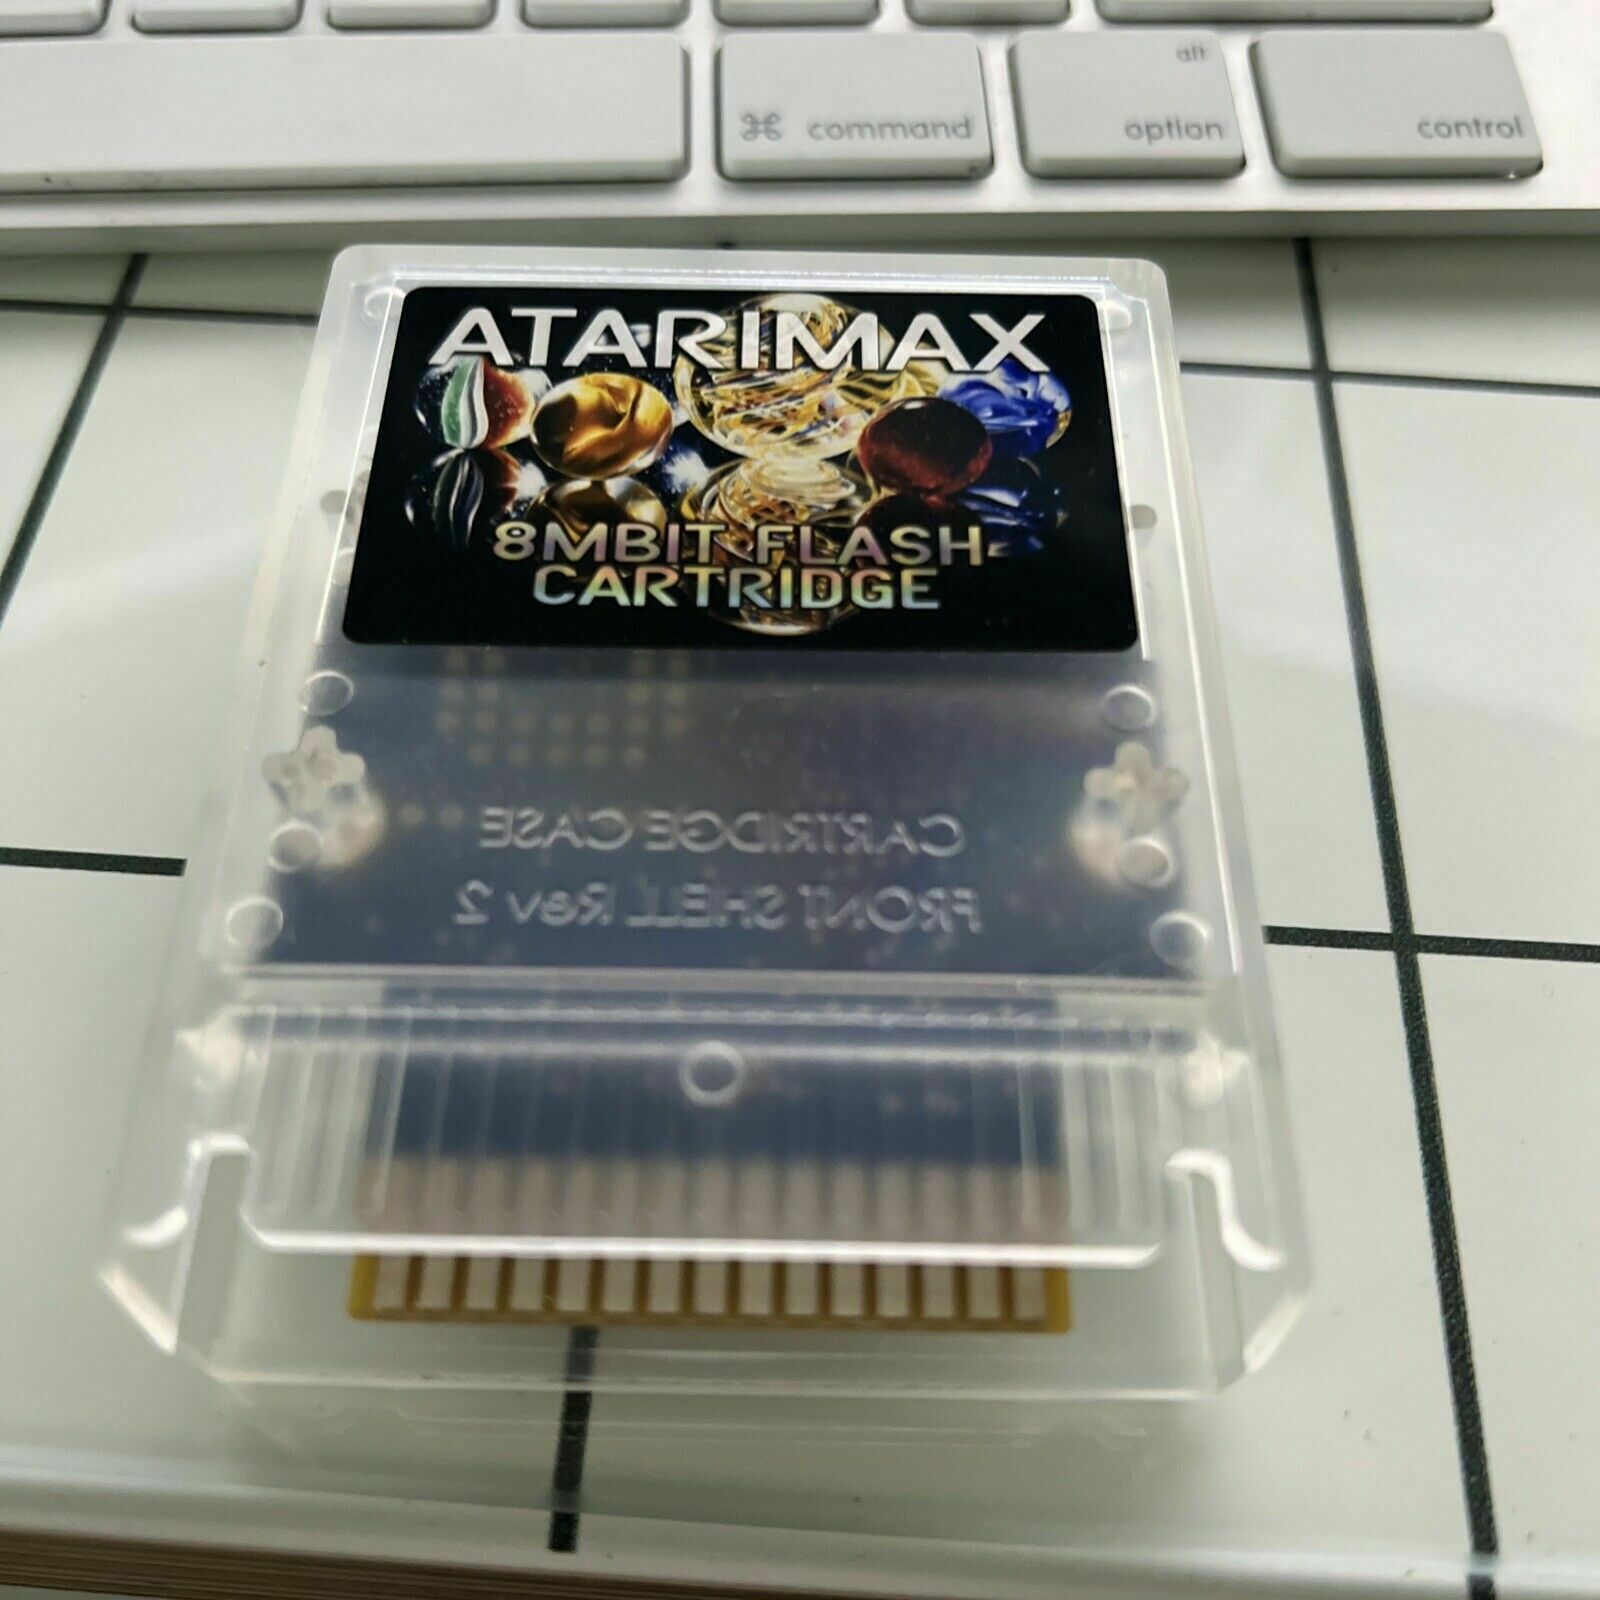 AtariMax cartridge (volume 1).  For ATARI 800 XL  130XE  65XE  XEGS